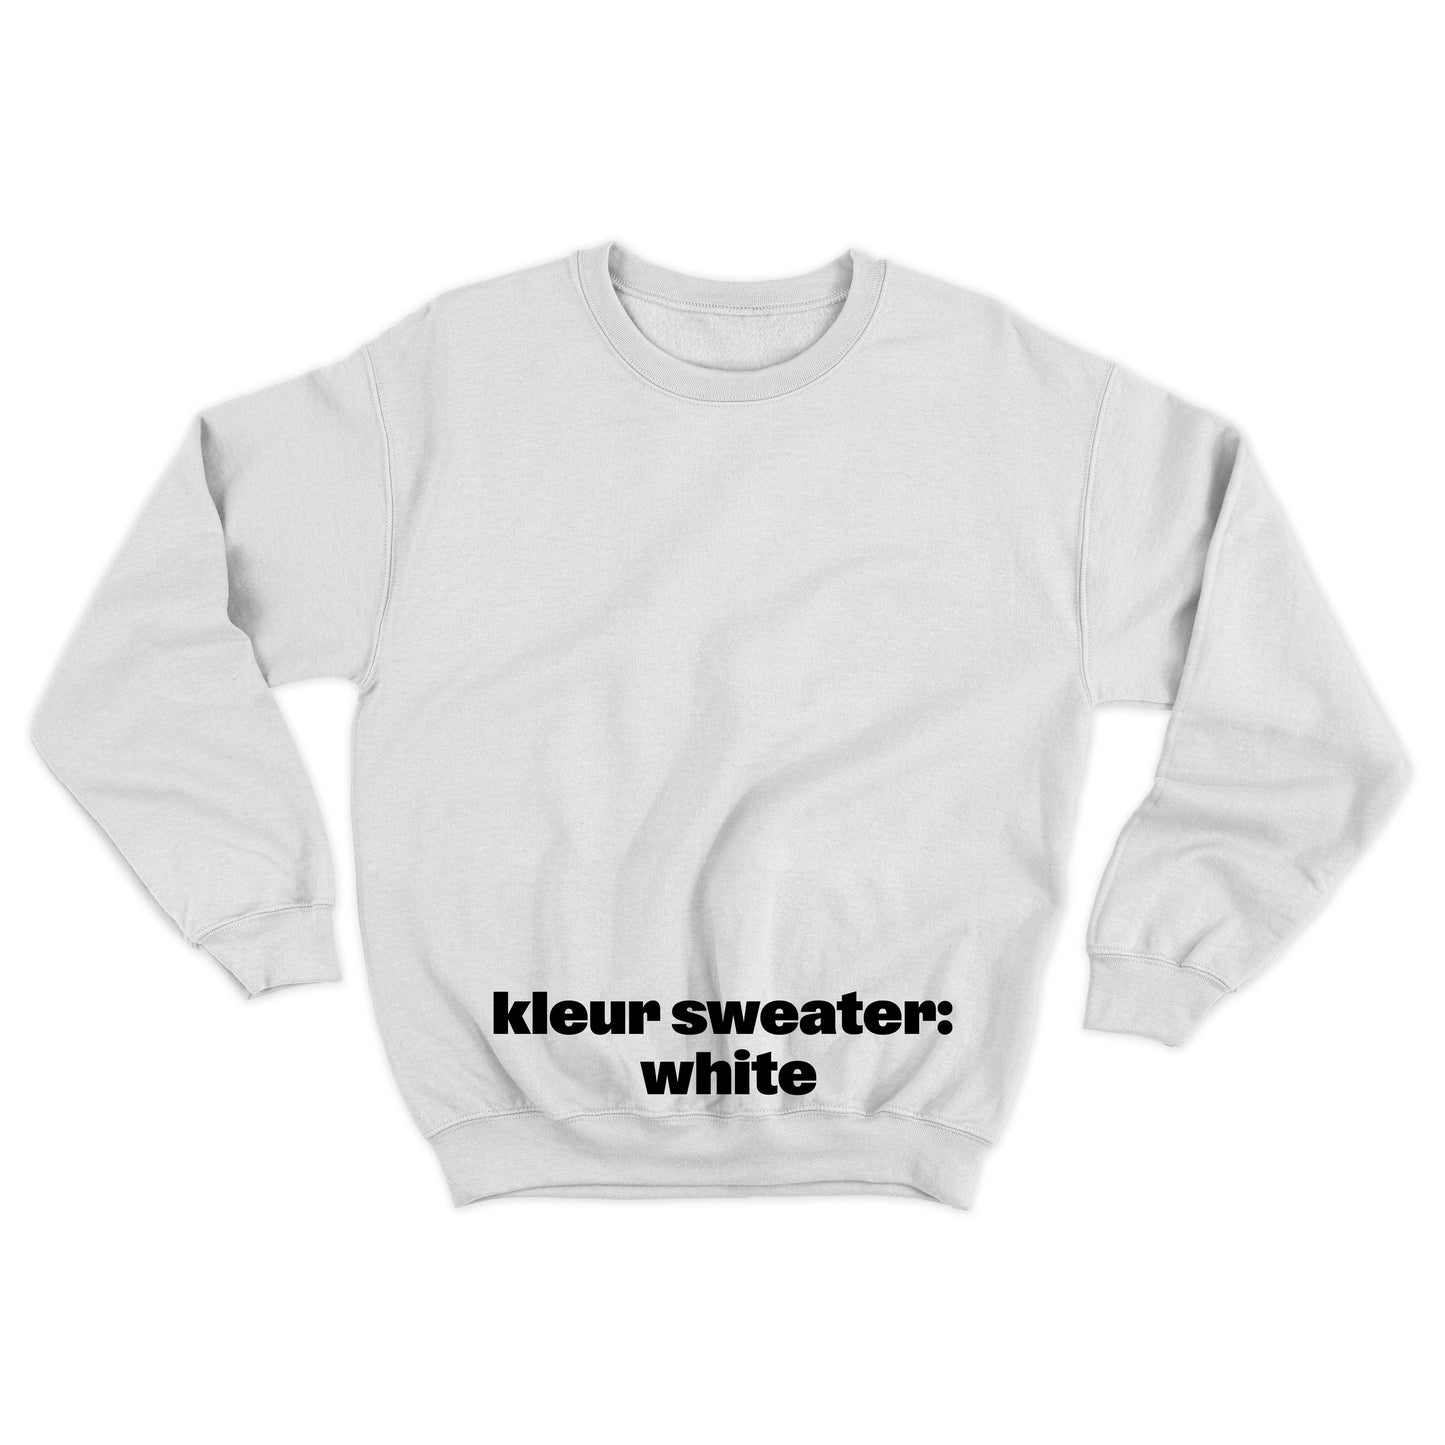 Sweater 'Rotown Letters' • Klein zwart logo midden